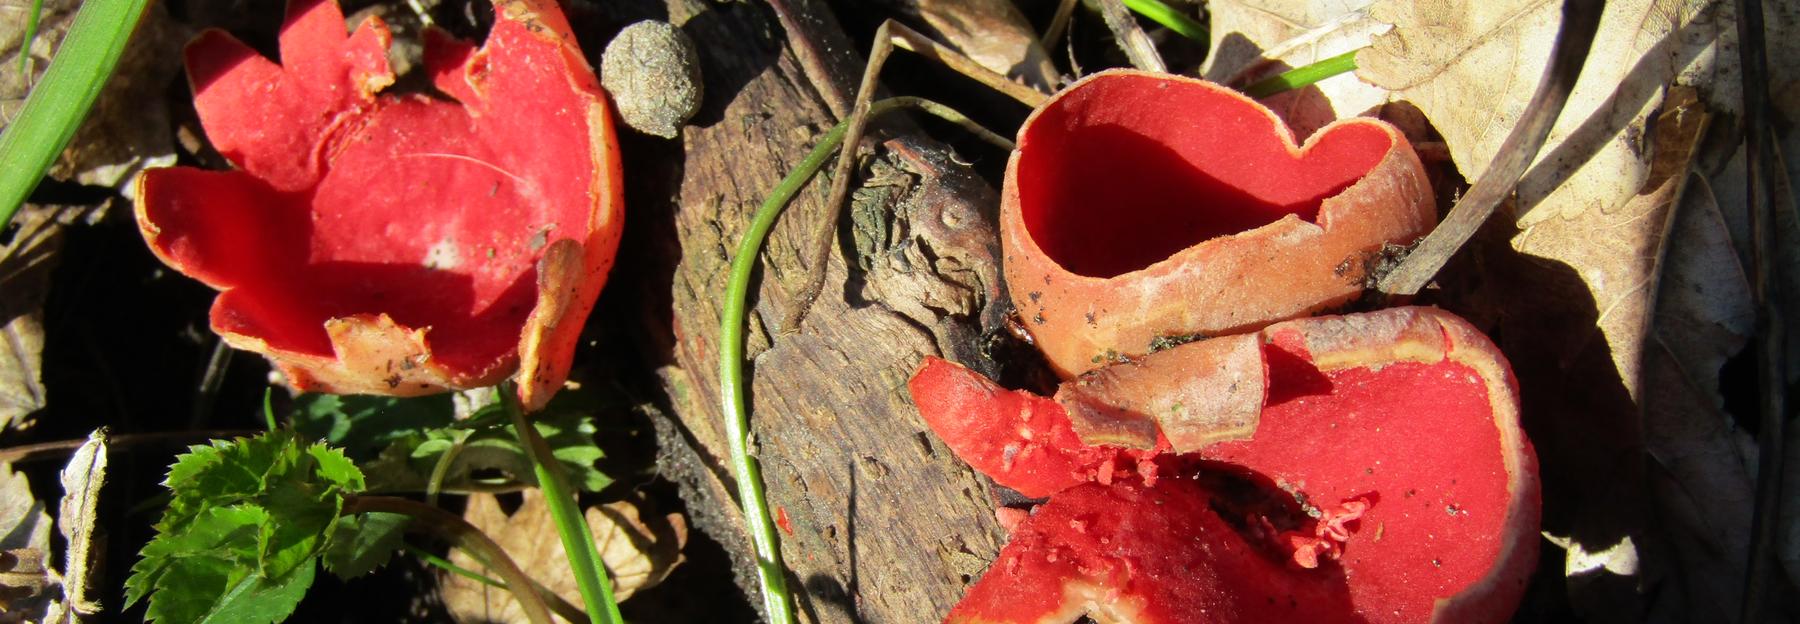 Die roten kelchförmigen Fruchtkörper des Österreichischen Prachtbecherlings werden bis zu 7 cm groß.